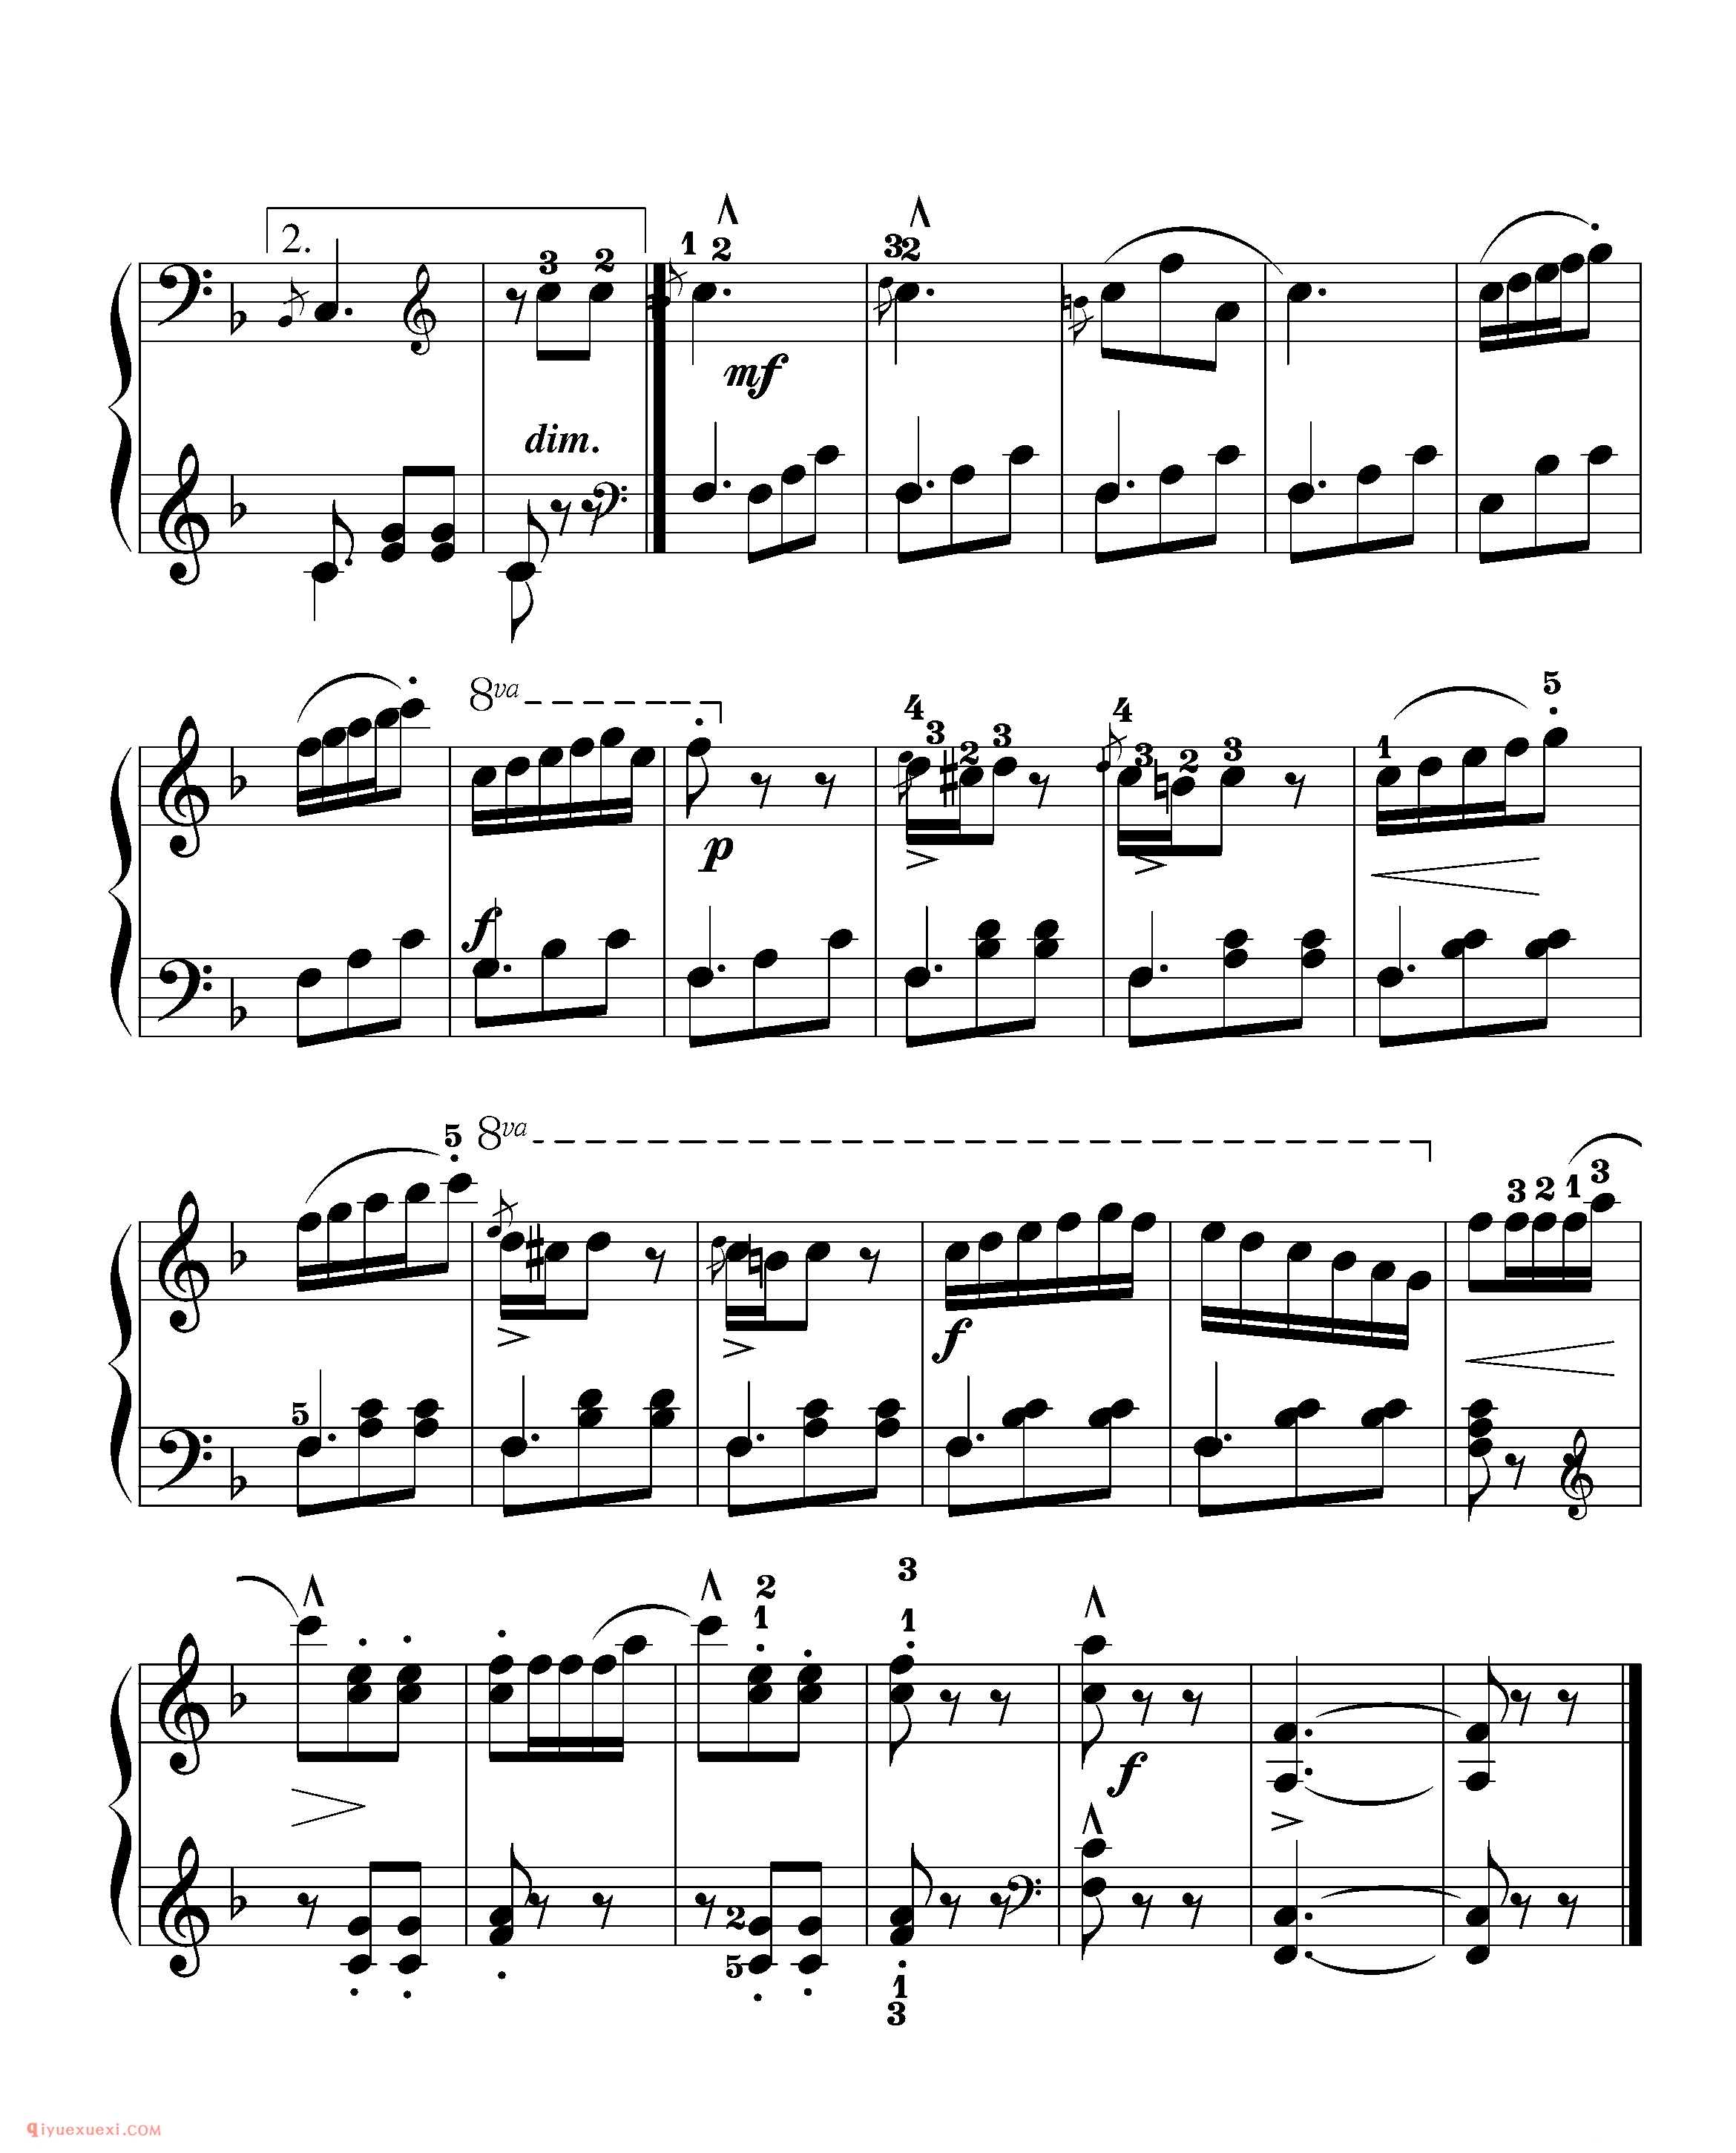 拜厄钢琴练习曲NO.100_拜尔(拜厄)钢琴基本教程练习曲第100首_五线谱